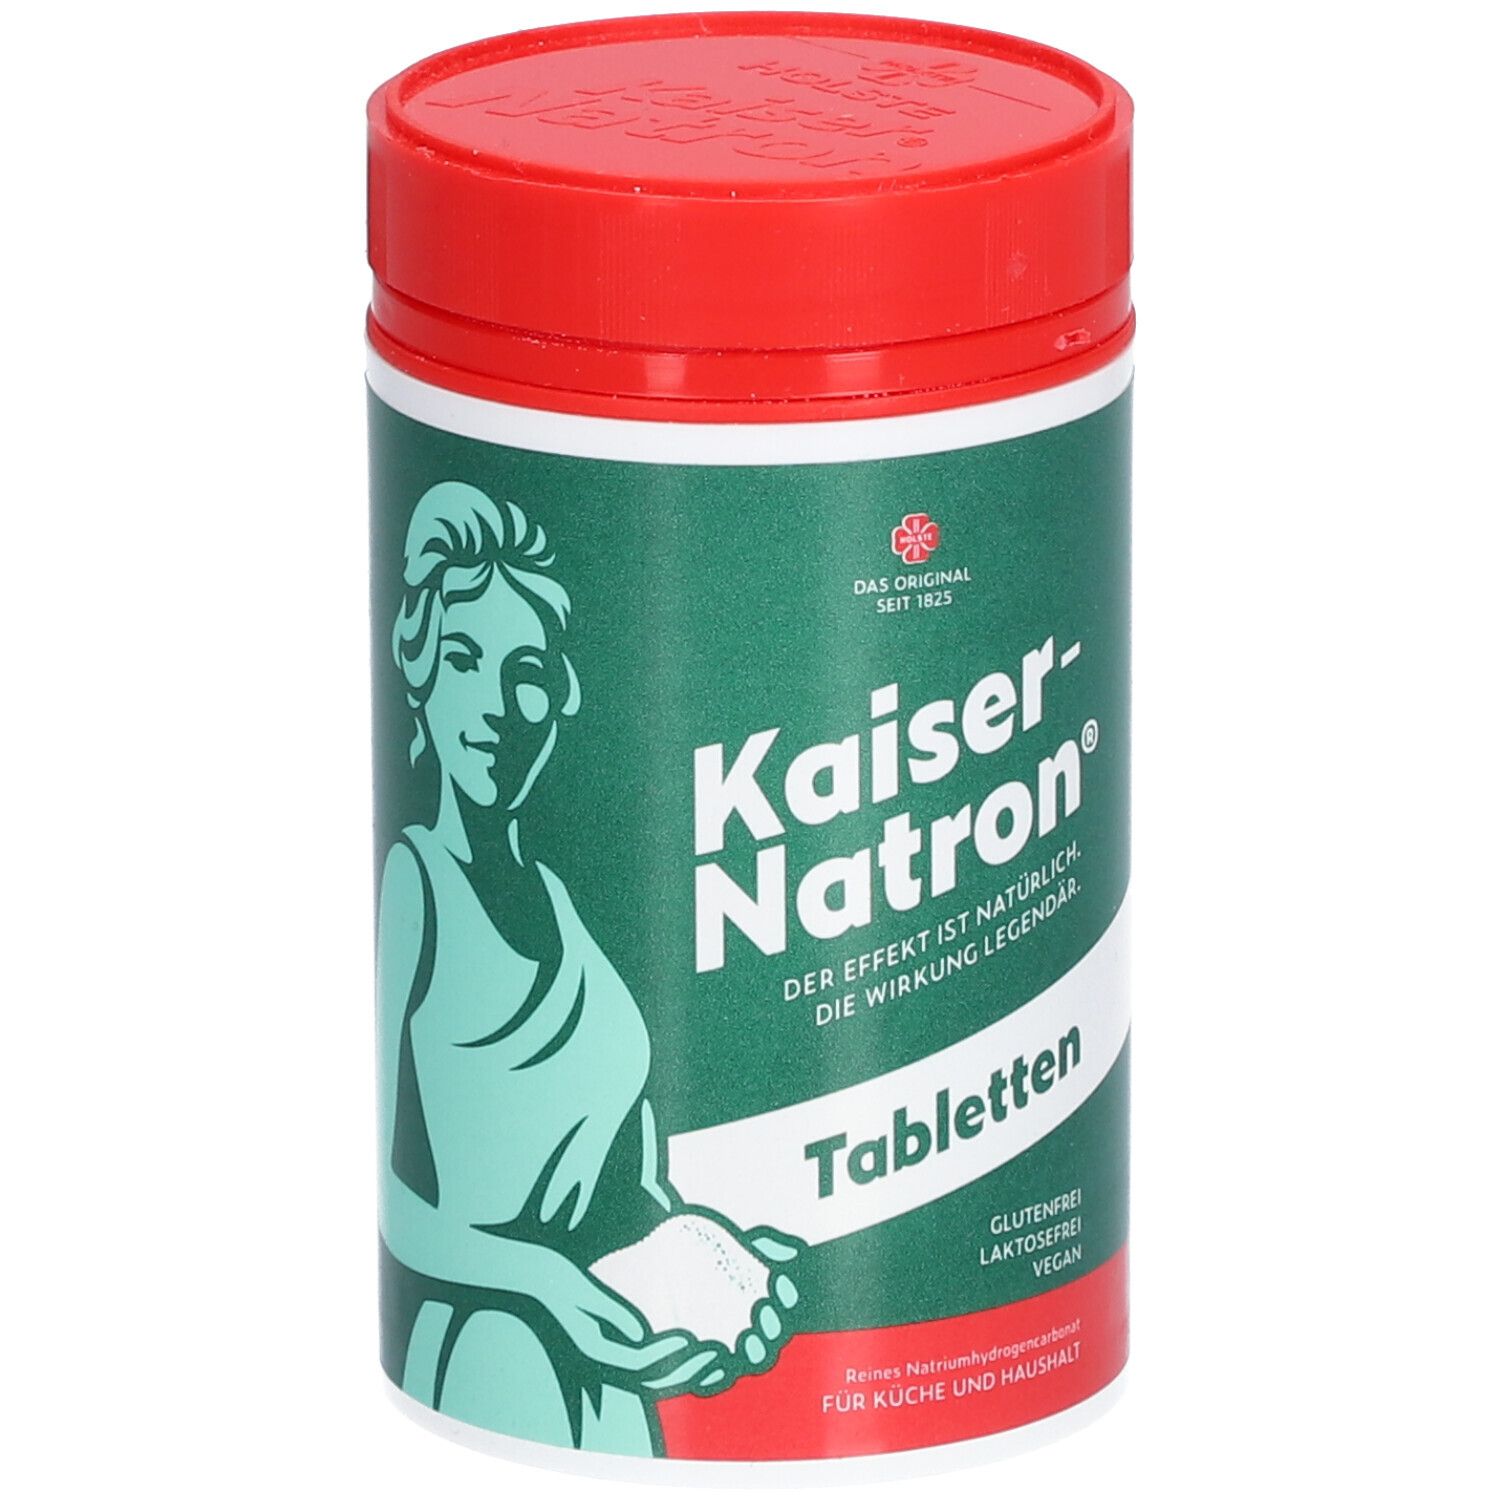 Kaiser-Natron Tabletten